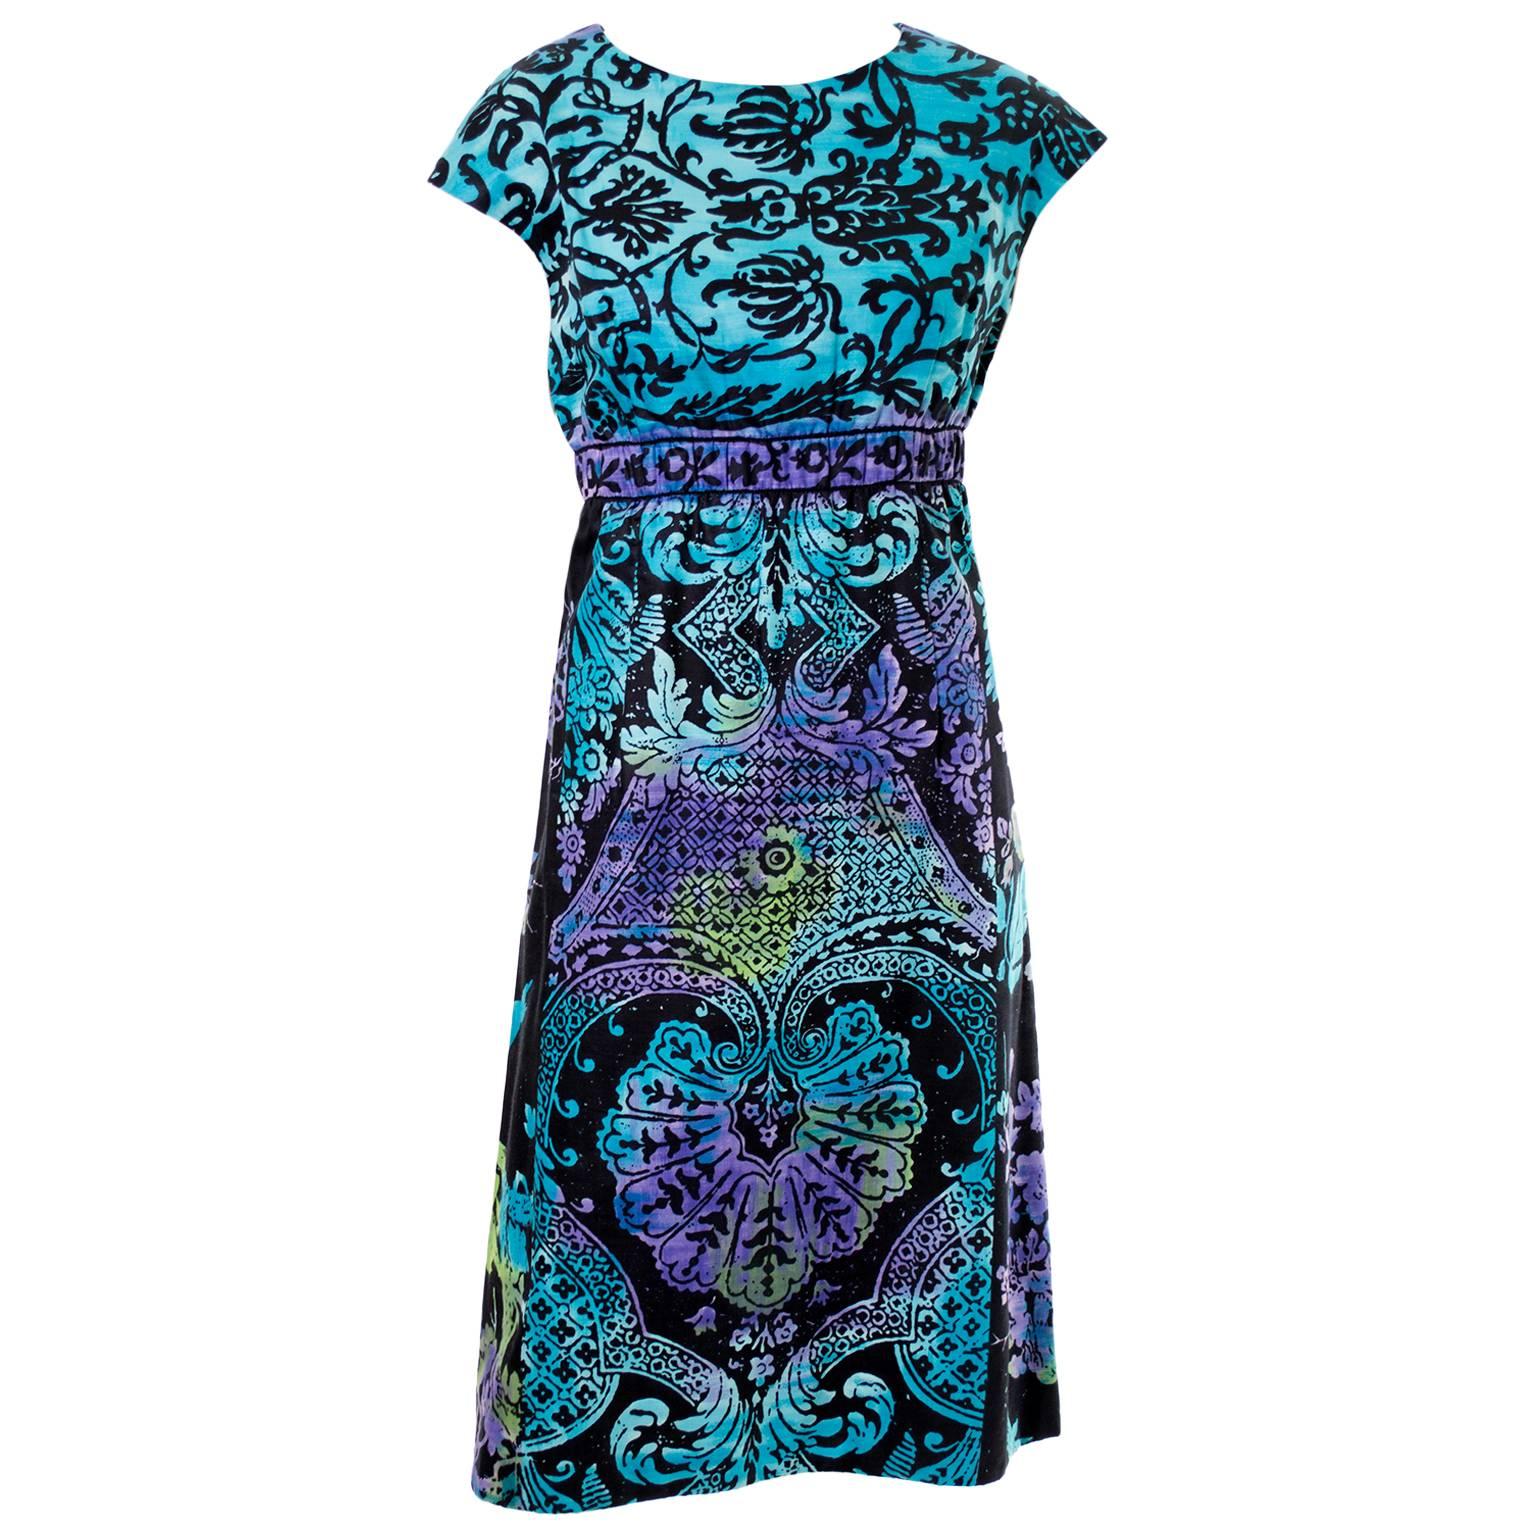 1970s Dress From Dynasty in Blue Purple Batik Cotton Size 6/8